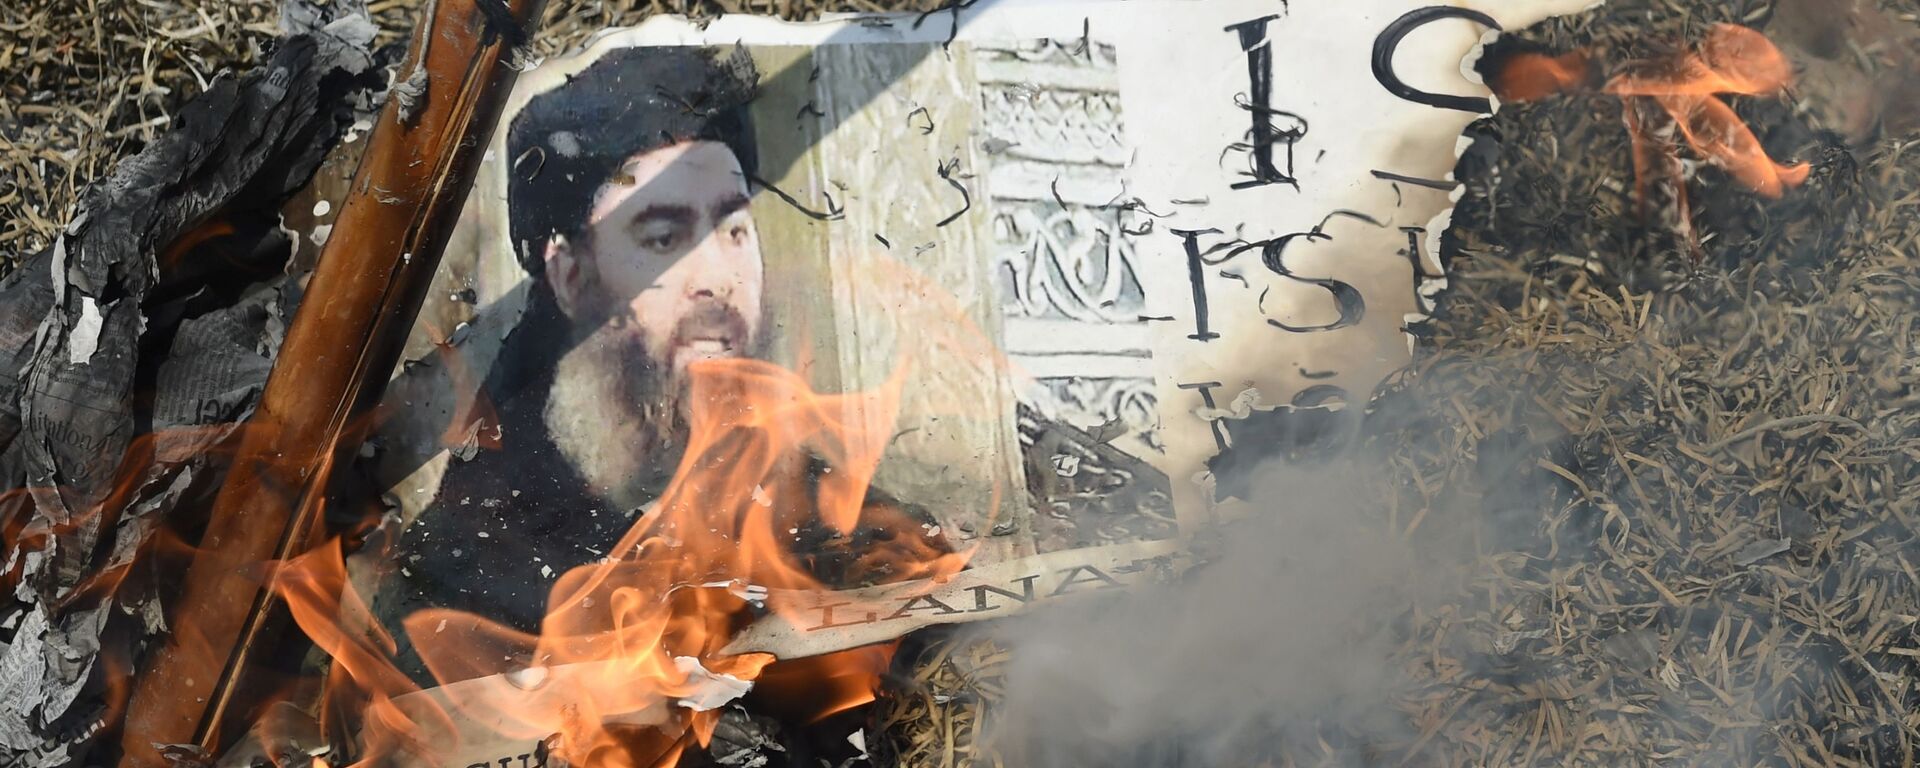 Портрет лидера ИГ* Абу Бакра аль-Багдади сжигают во время демонстрации в Индии - Sputnik Тоҷикистон, 1920, 20.09.2020